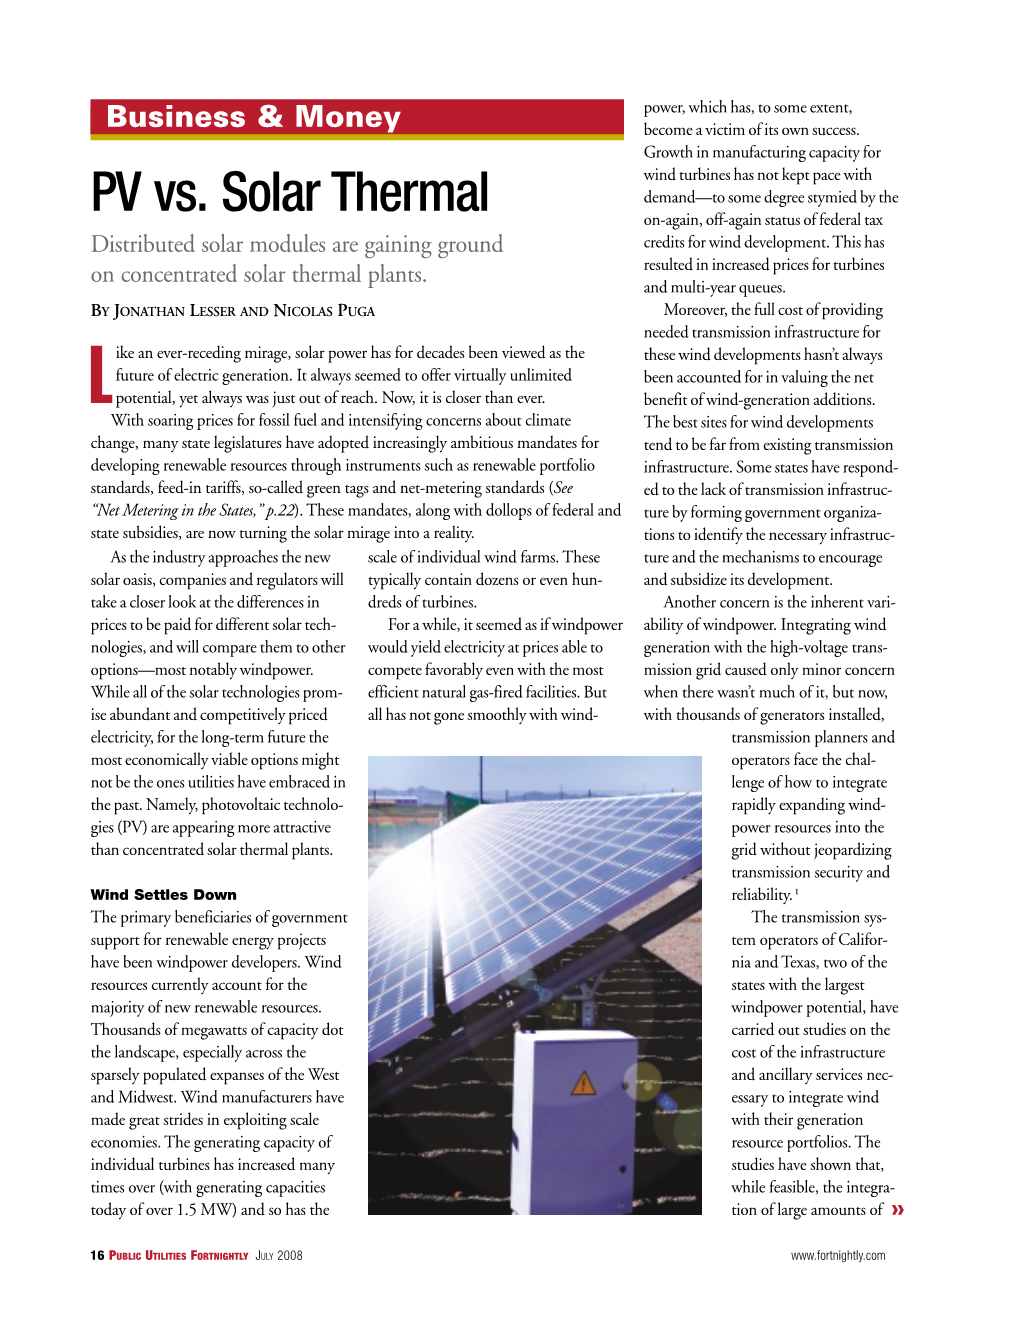 PV Vs. Solar Thermal